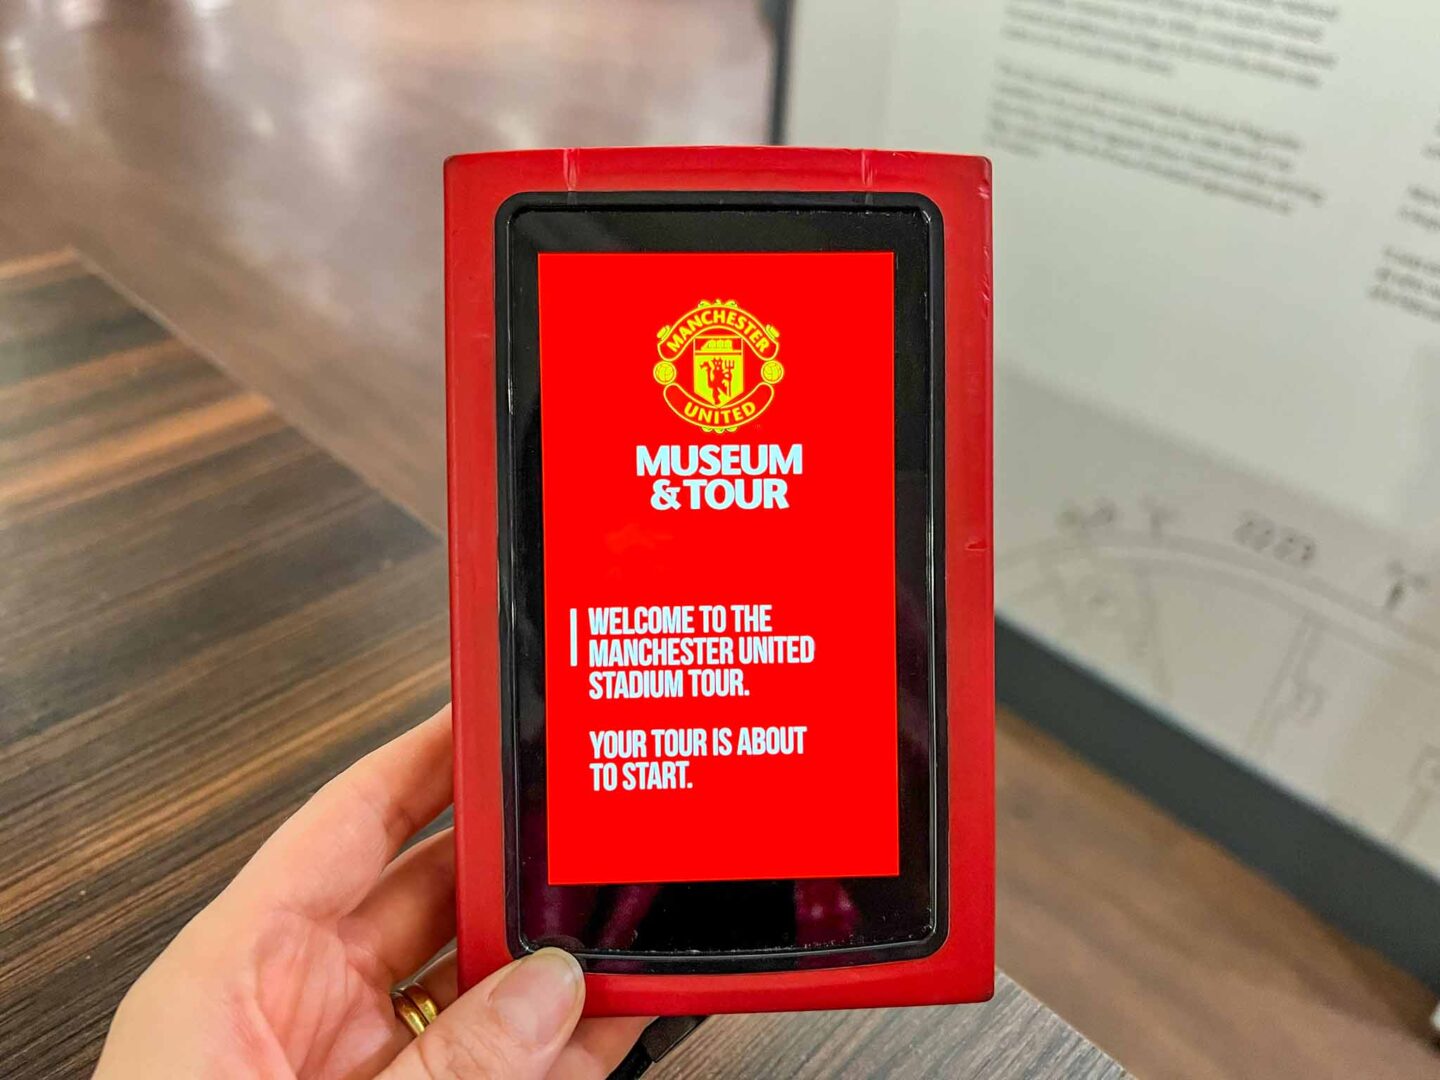 Manchester United Stadium Tour, Multimedia guide